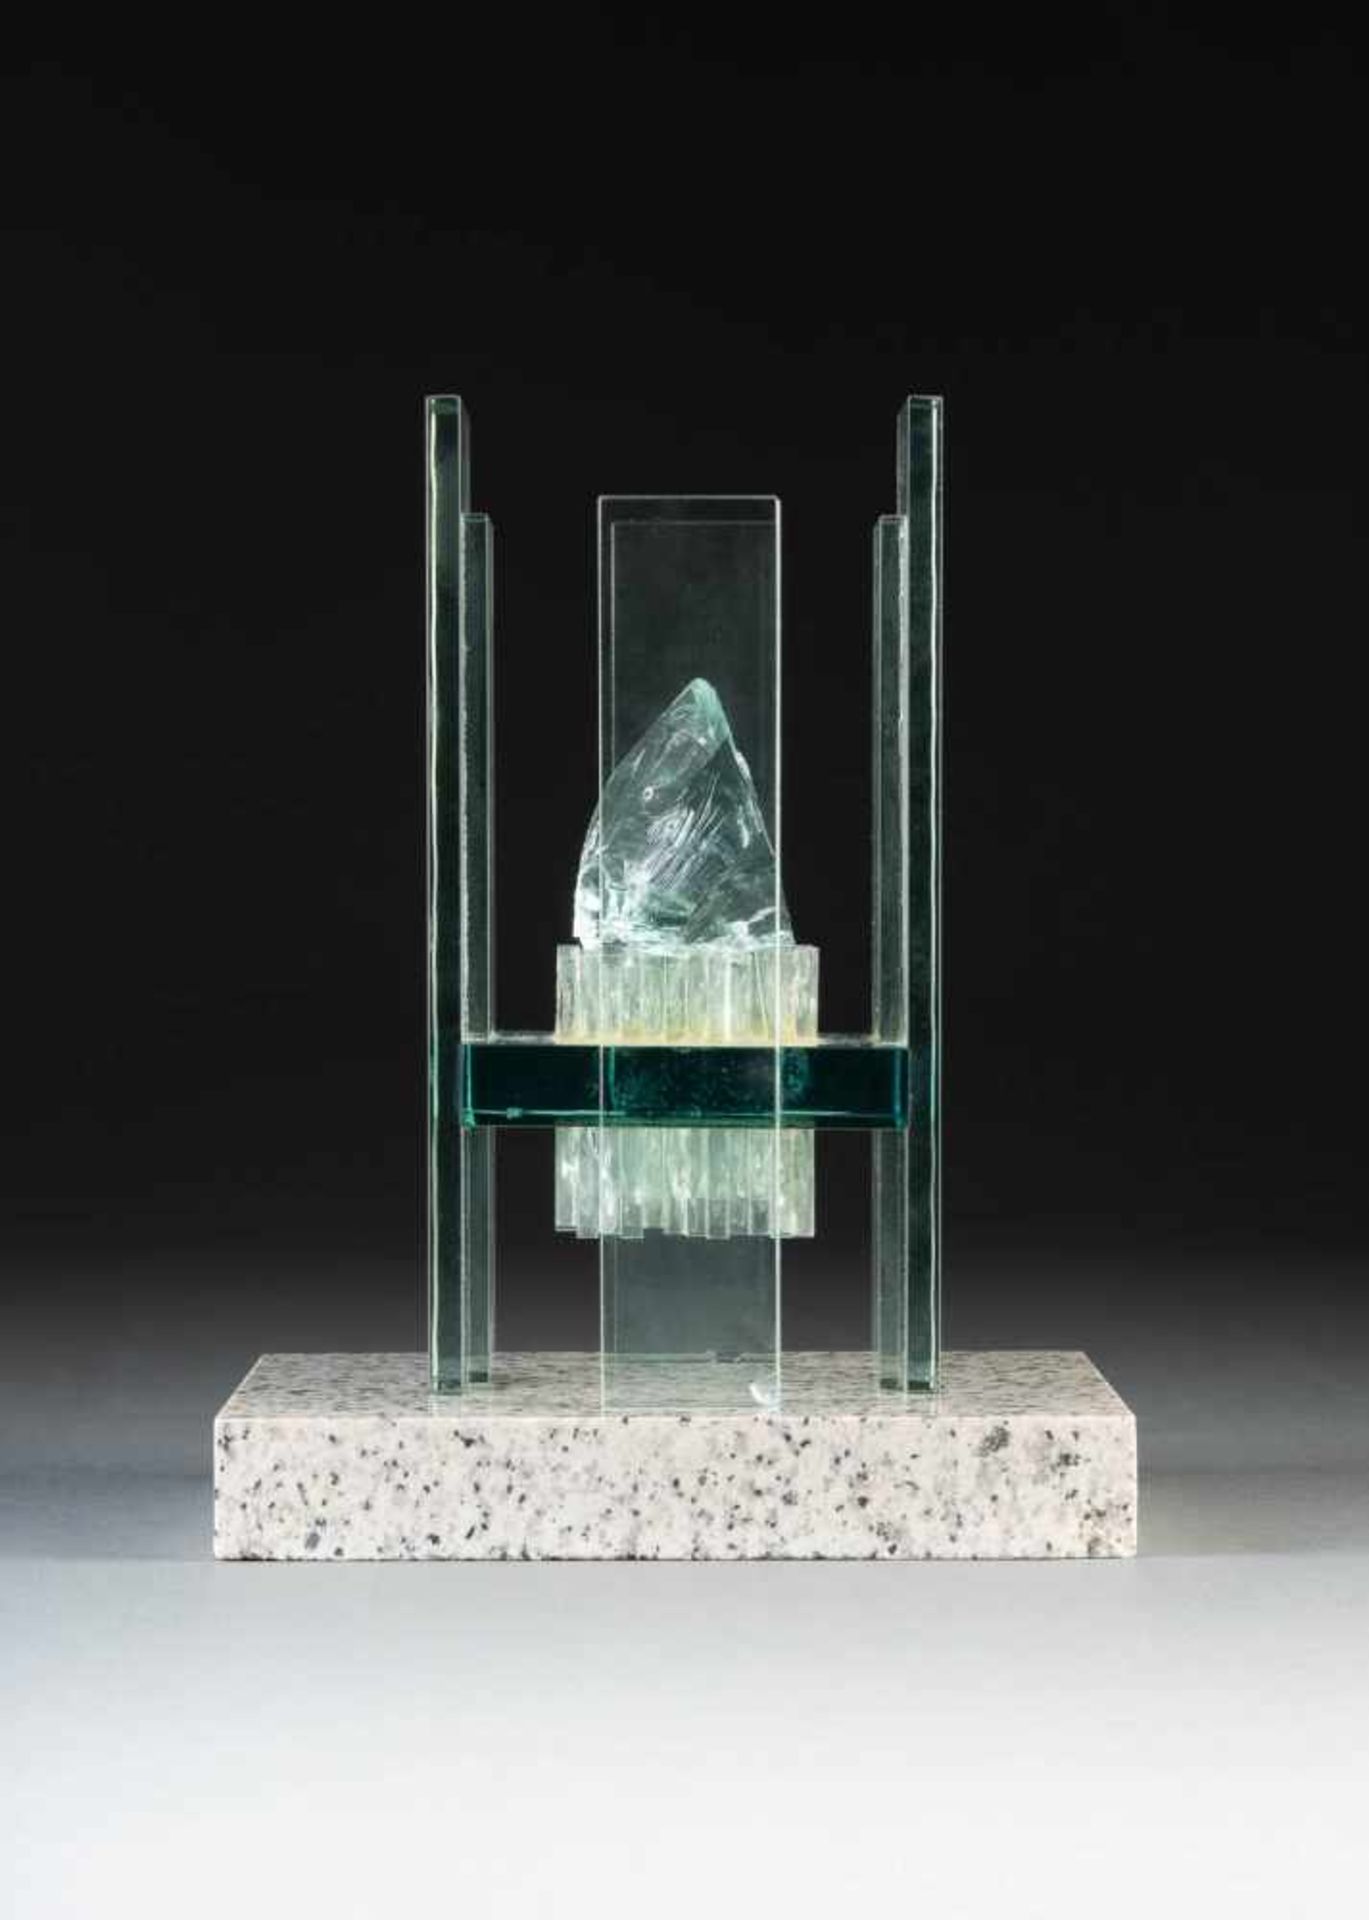 HORST MÖLLEKEN1937 Zingst TRANSPARENCY Flat glass, crysatl glass, stone base. 23 x 13 x 13 cm.